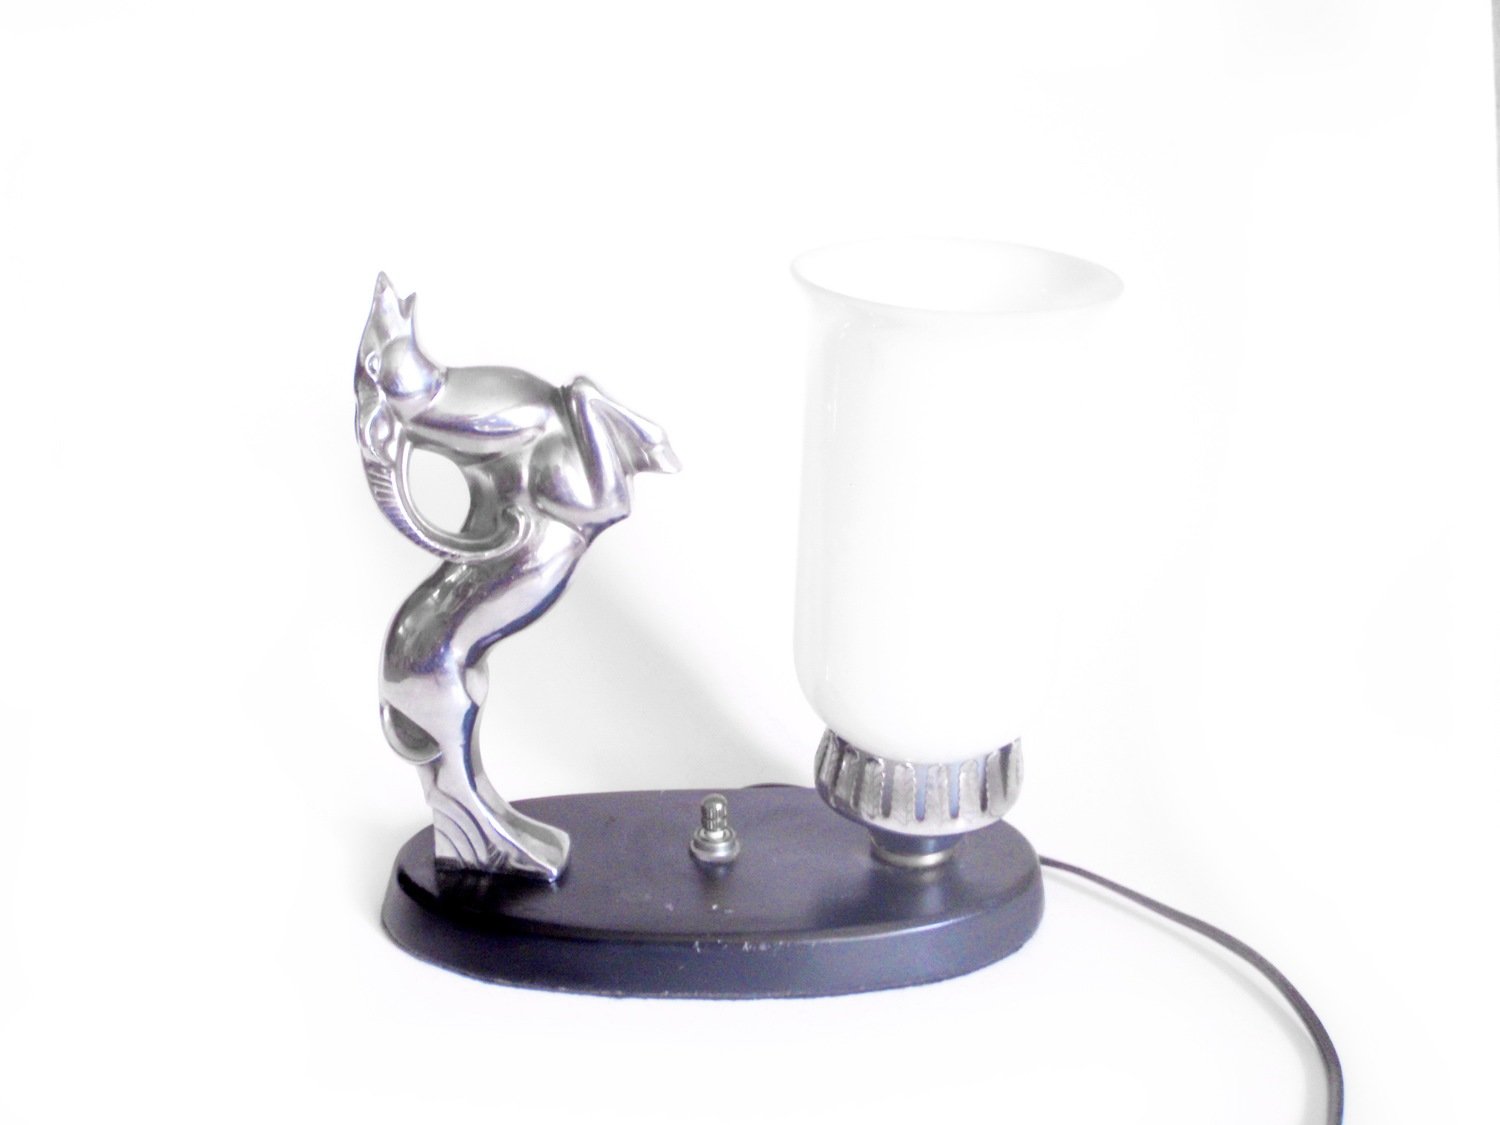 Art Deco Chrome Antelope Table Lamp 1930s Lighting Mood Accent Light